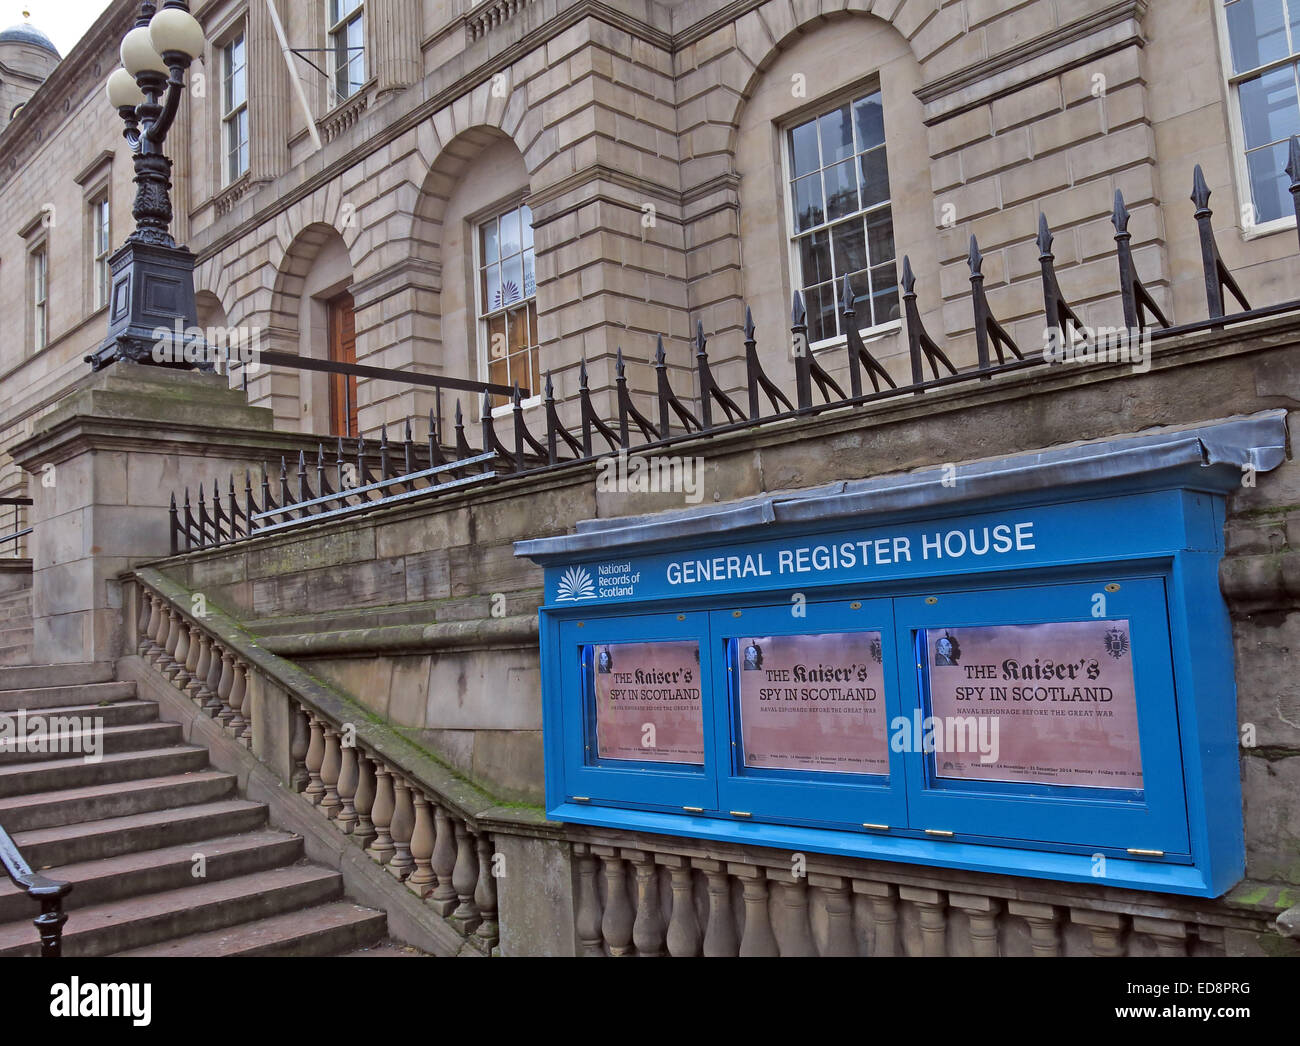 General Register House, Édimbourg, Écosse, Royaume-Uni Banque D'Images